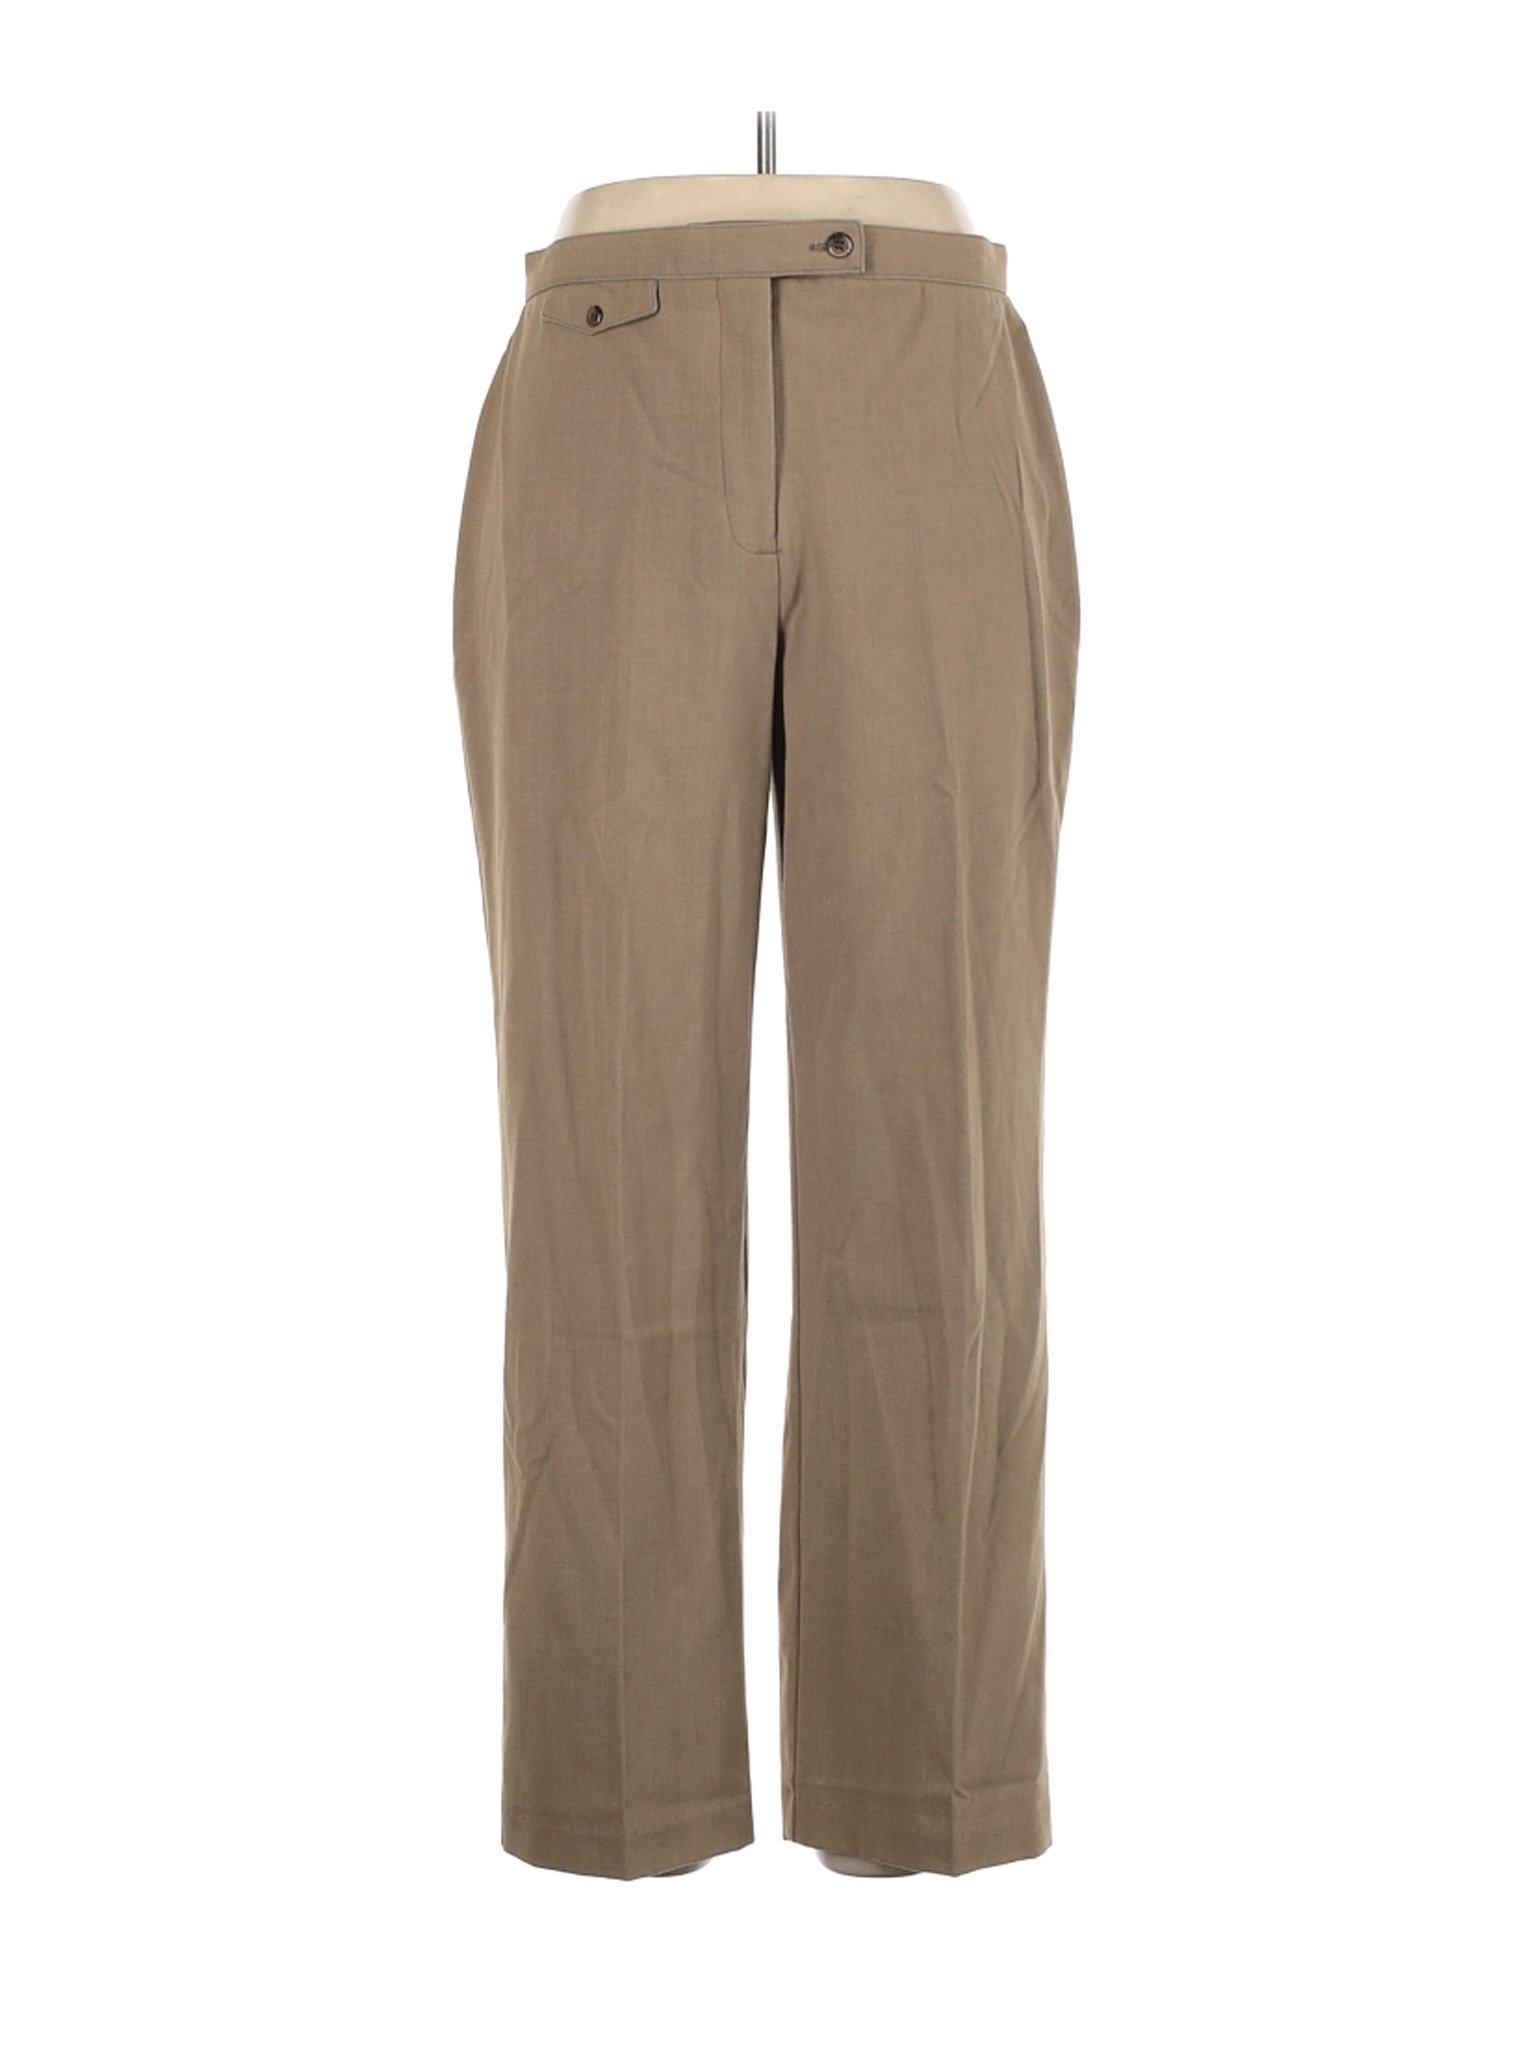 JM Collection Women Brown Dress Pants 14 | eBay